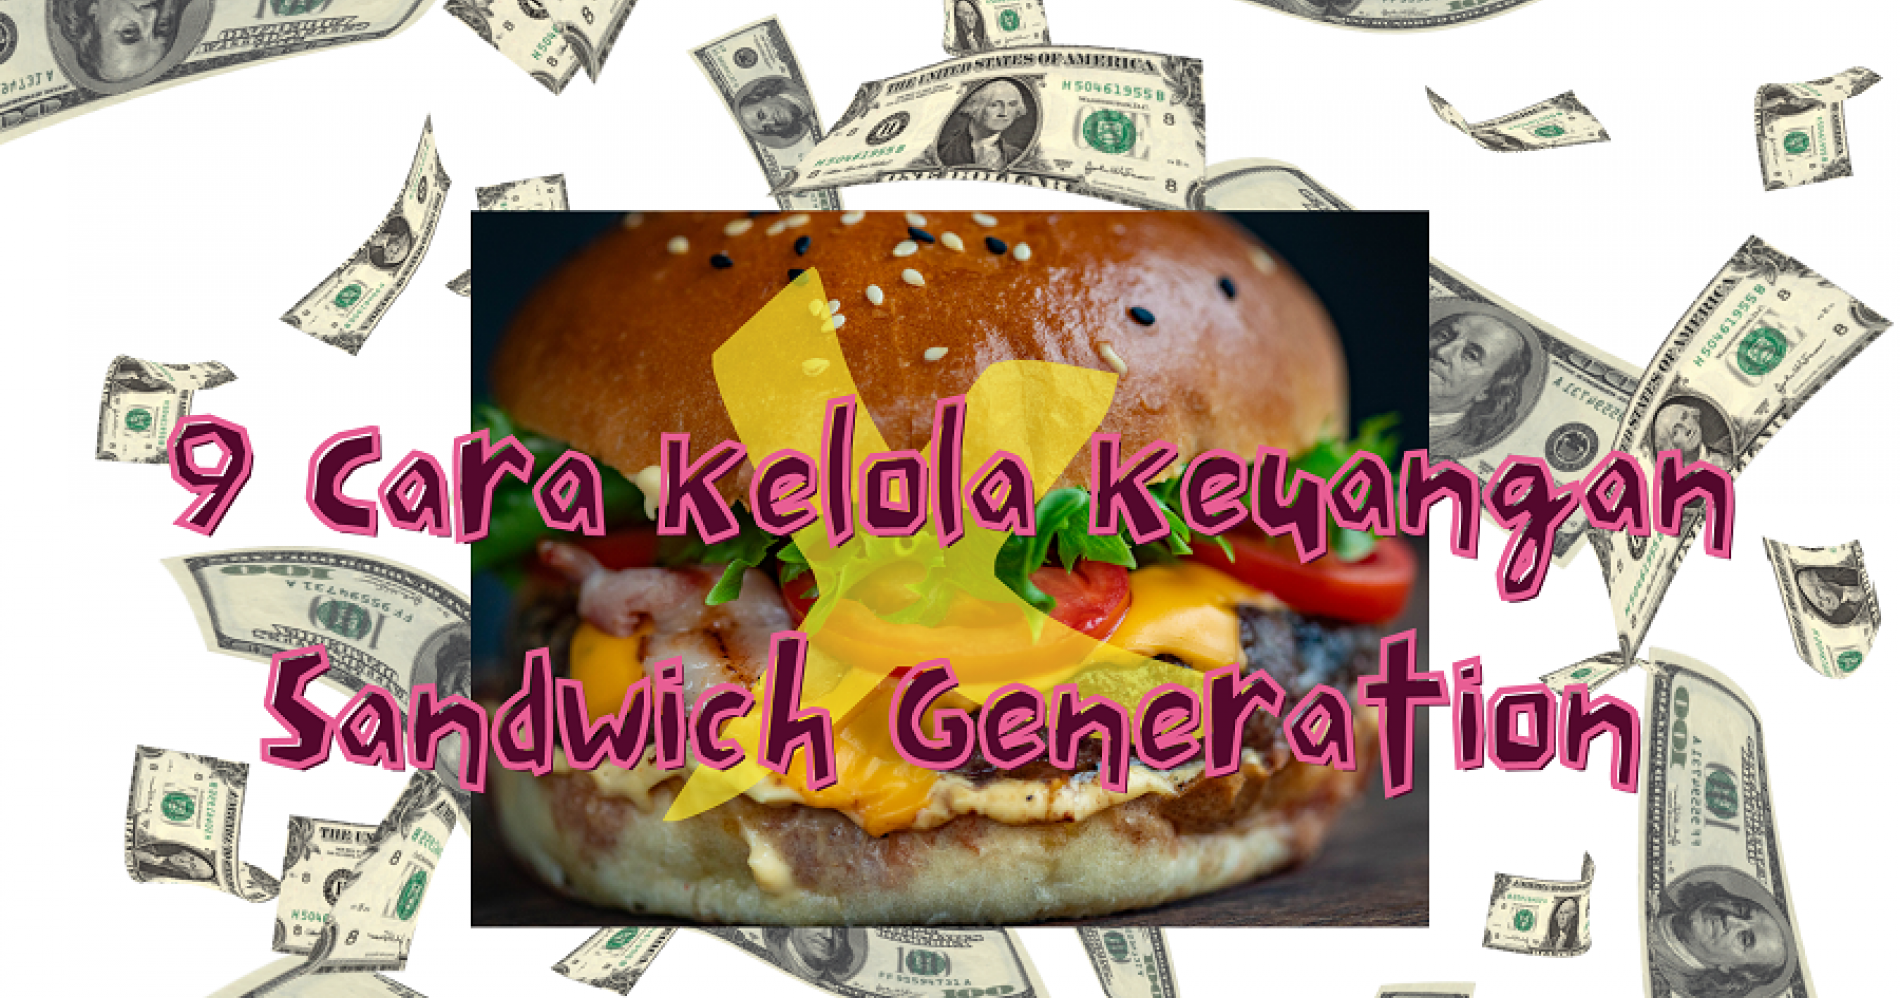 9 Cara Mengatur Keuangan sandwich generation Biar Cuan Maksimal